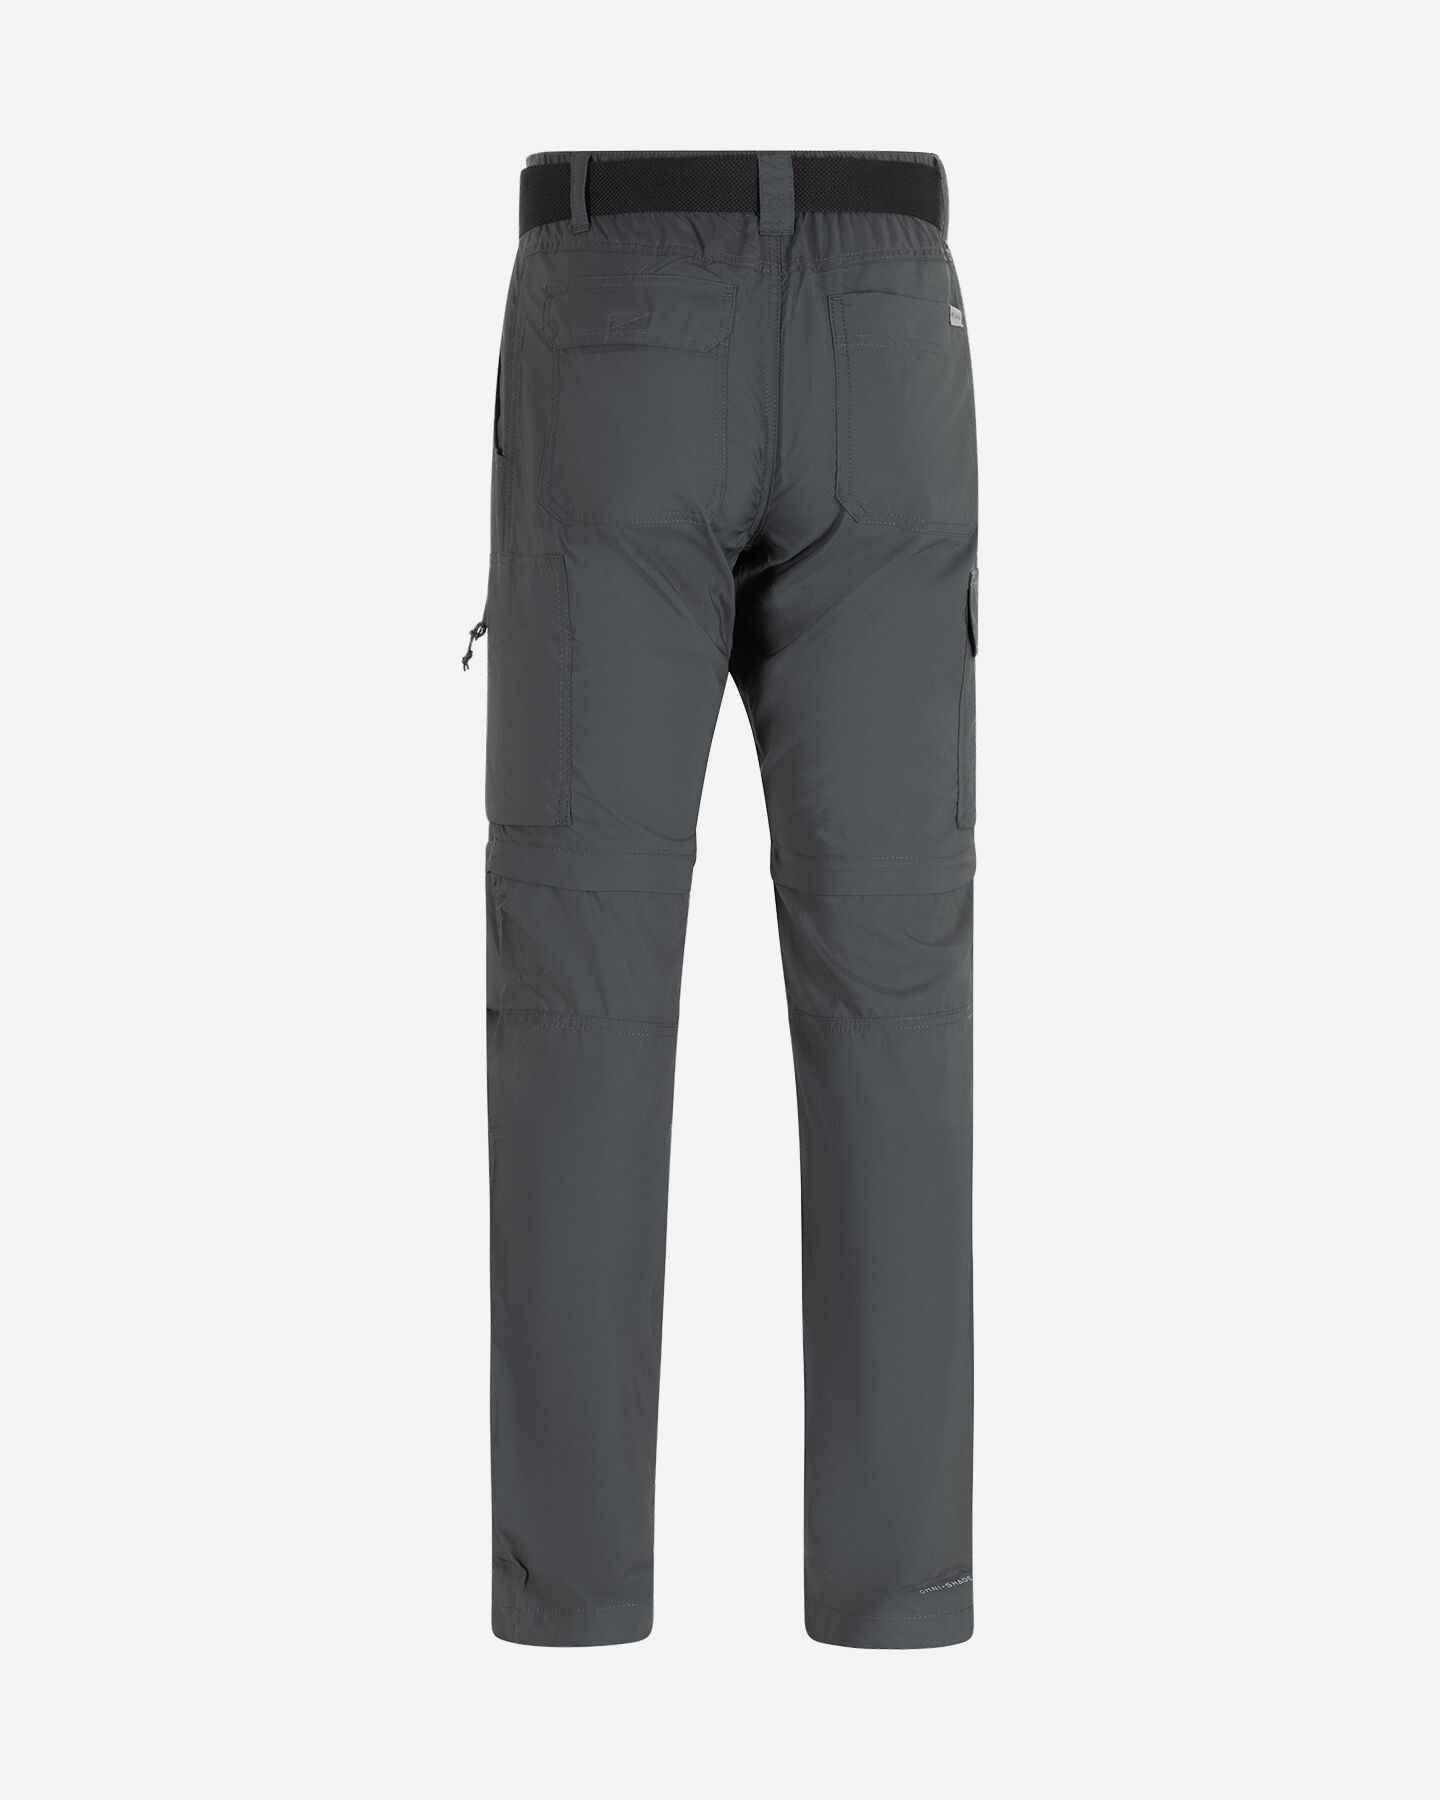  Pantalone outdoor COLUMBIA SILVER RIDGE M S5553528|028|4032 scatto 1